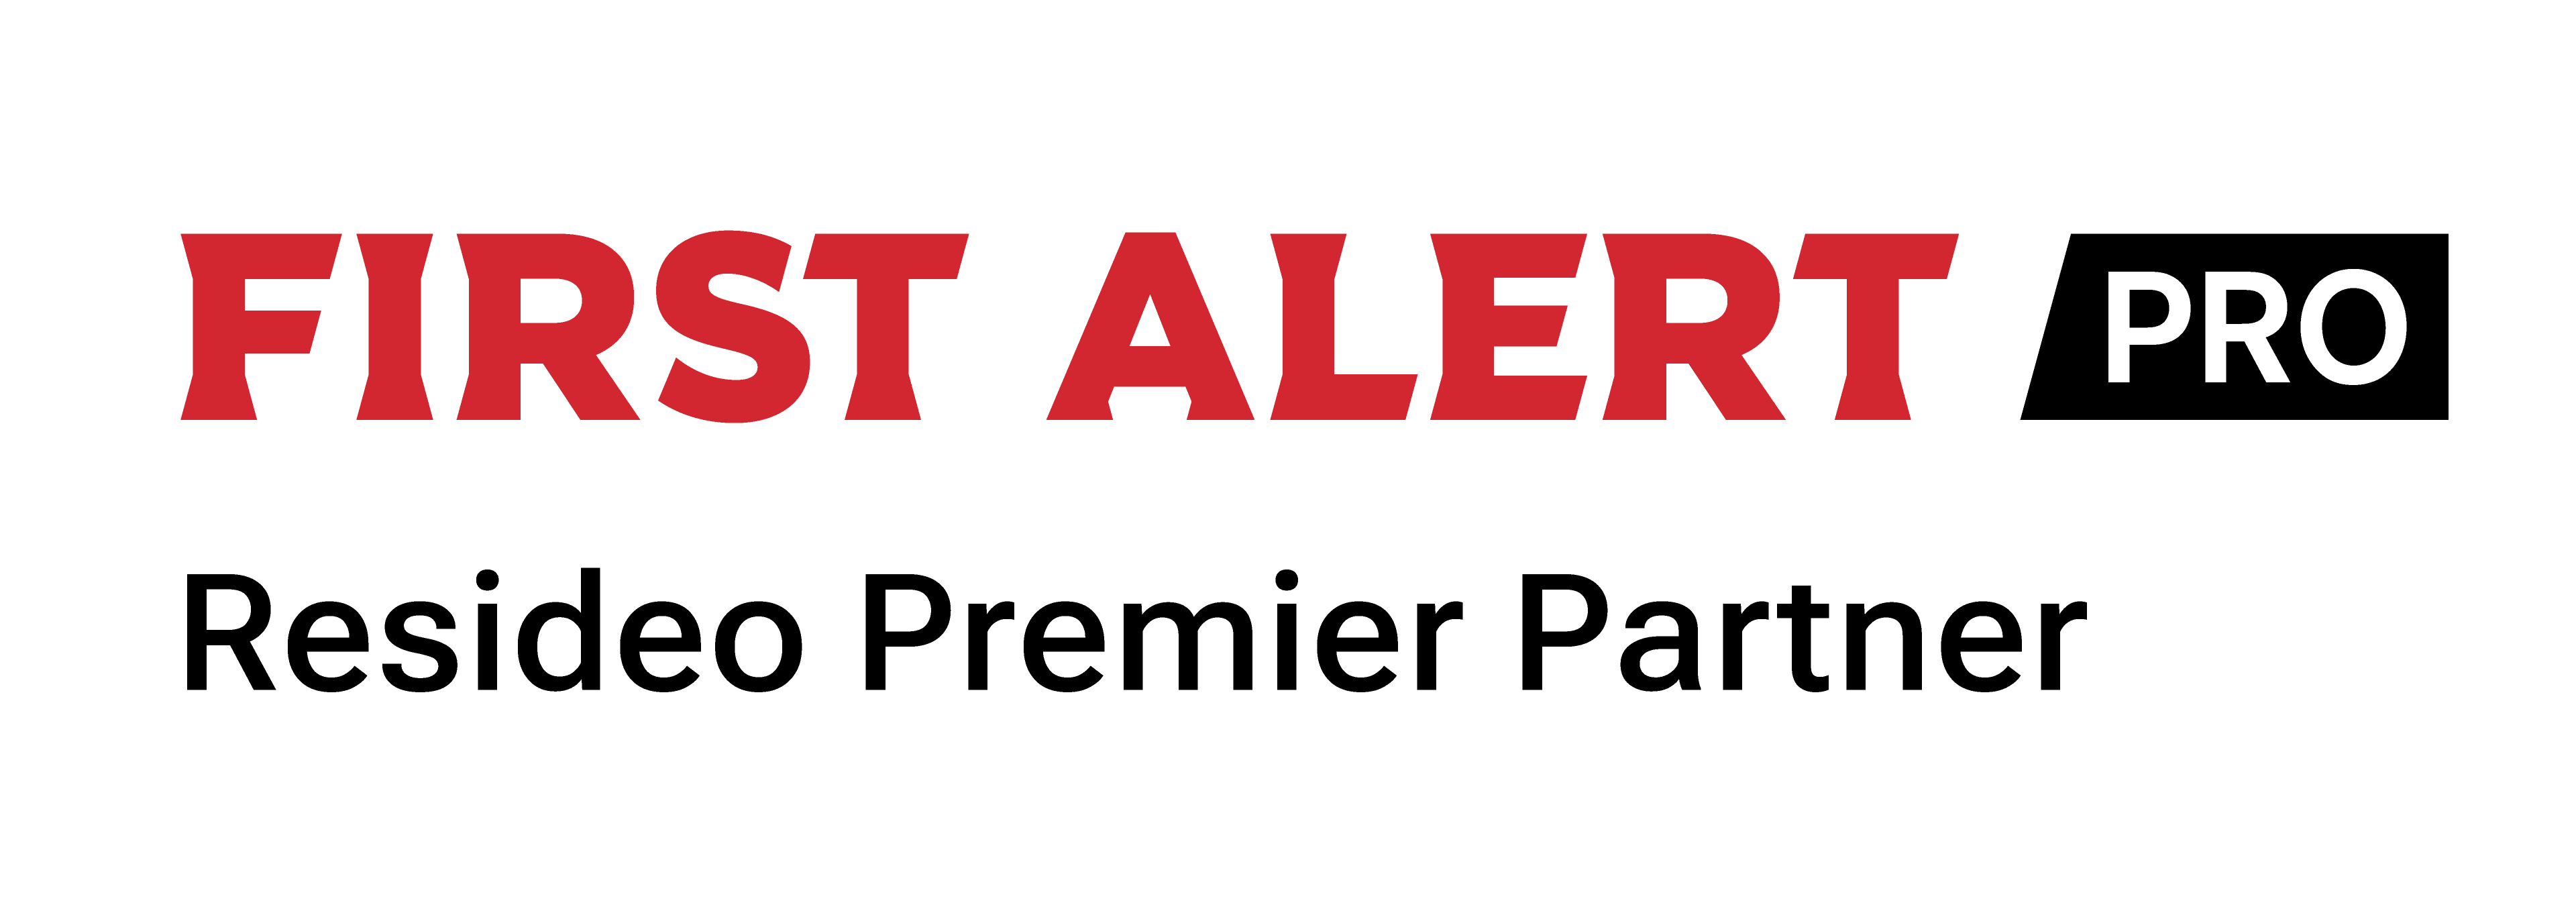 First Alert Pro Logo